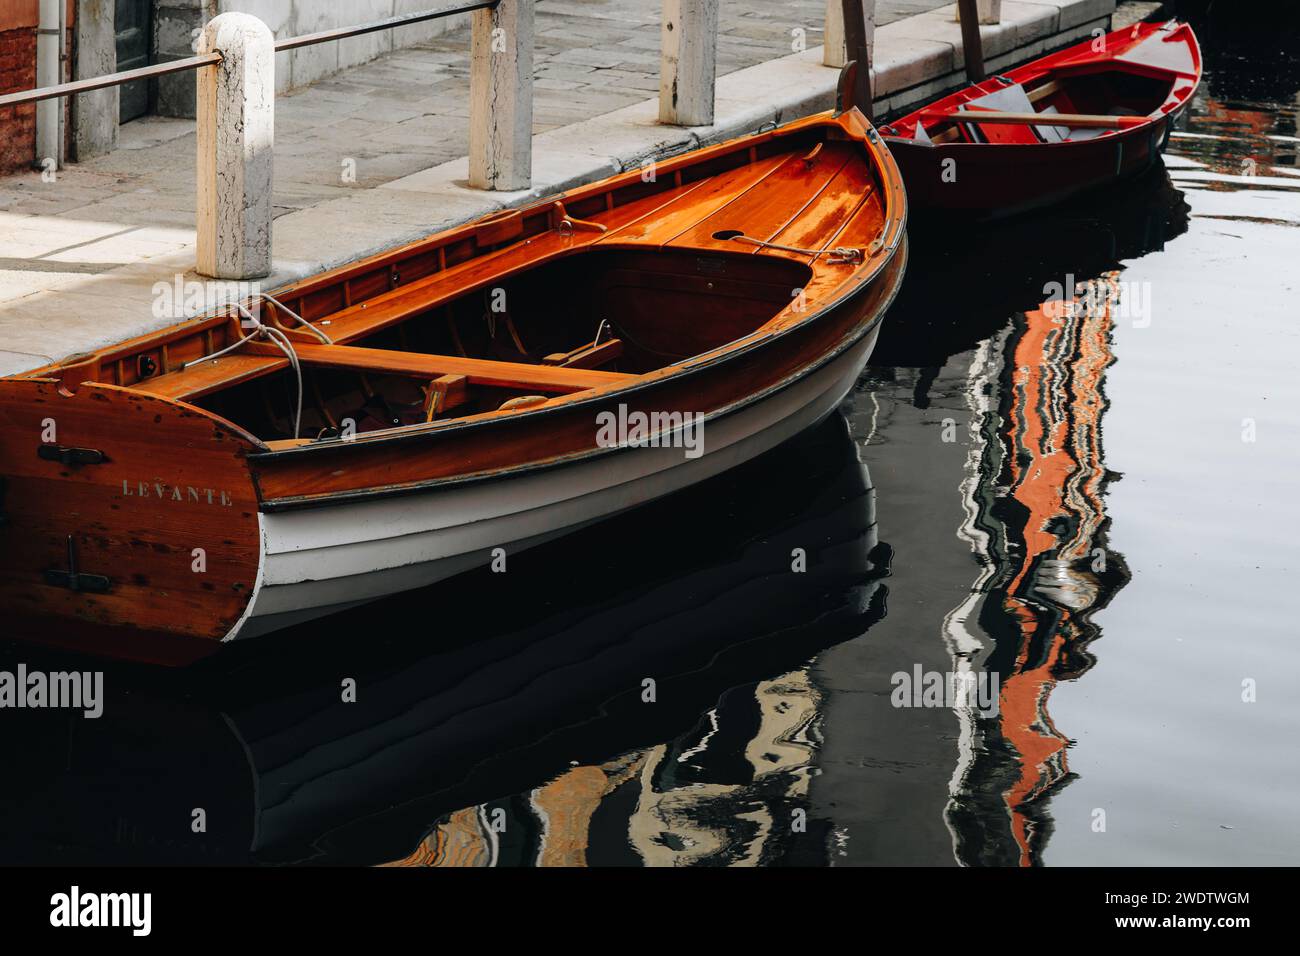 Un bateau est amarré sur un canal à Venise. Photo de haute qualité Banque D'Images